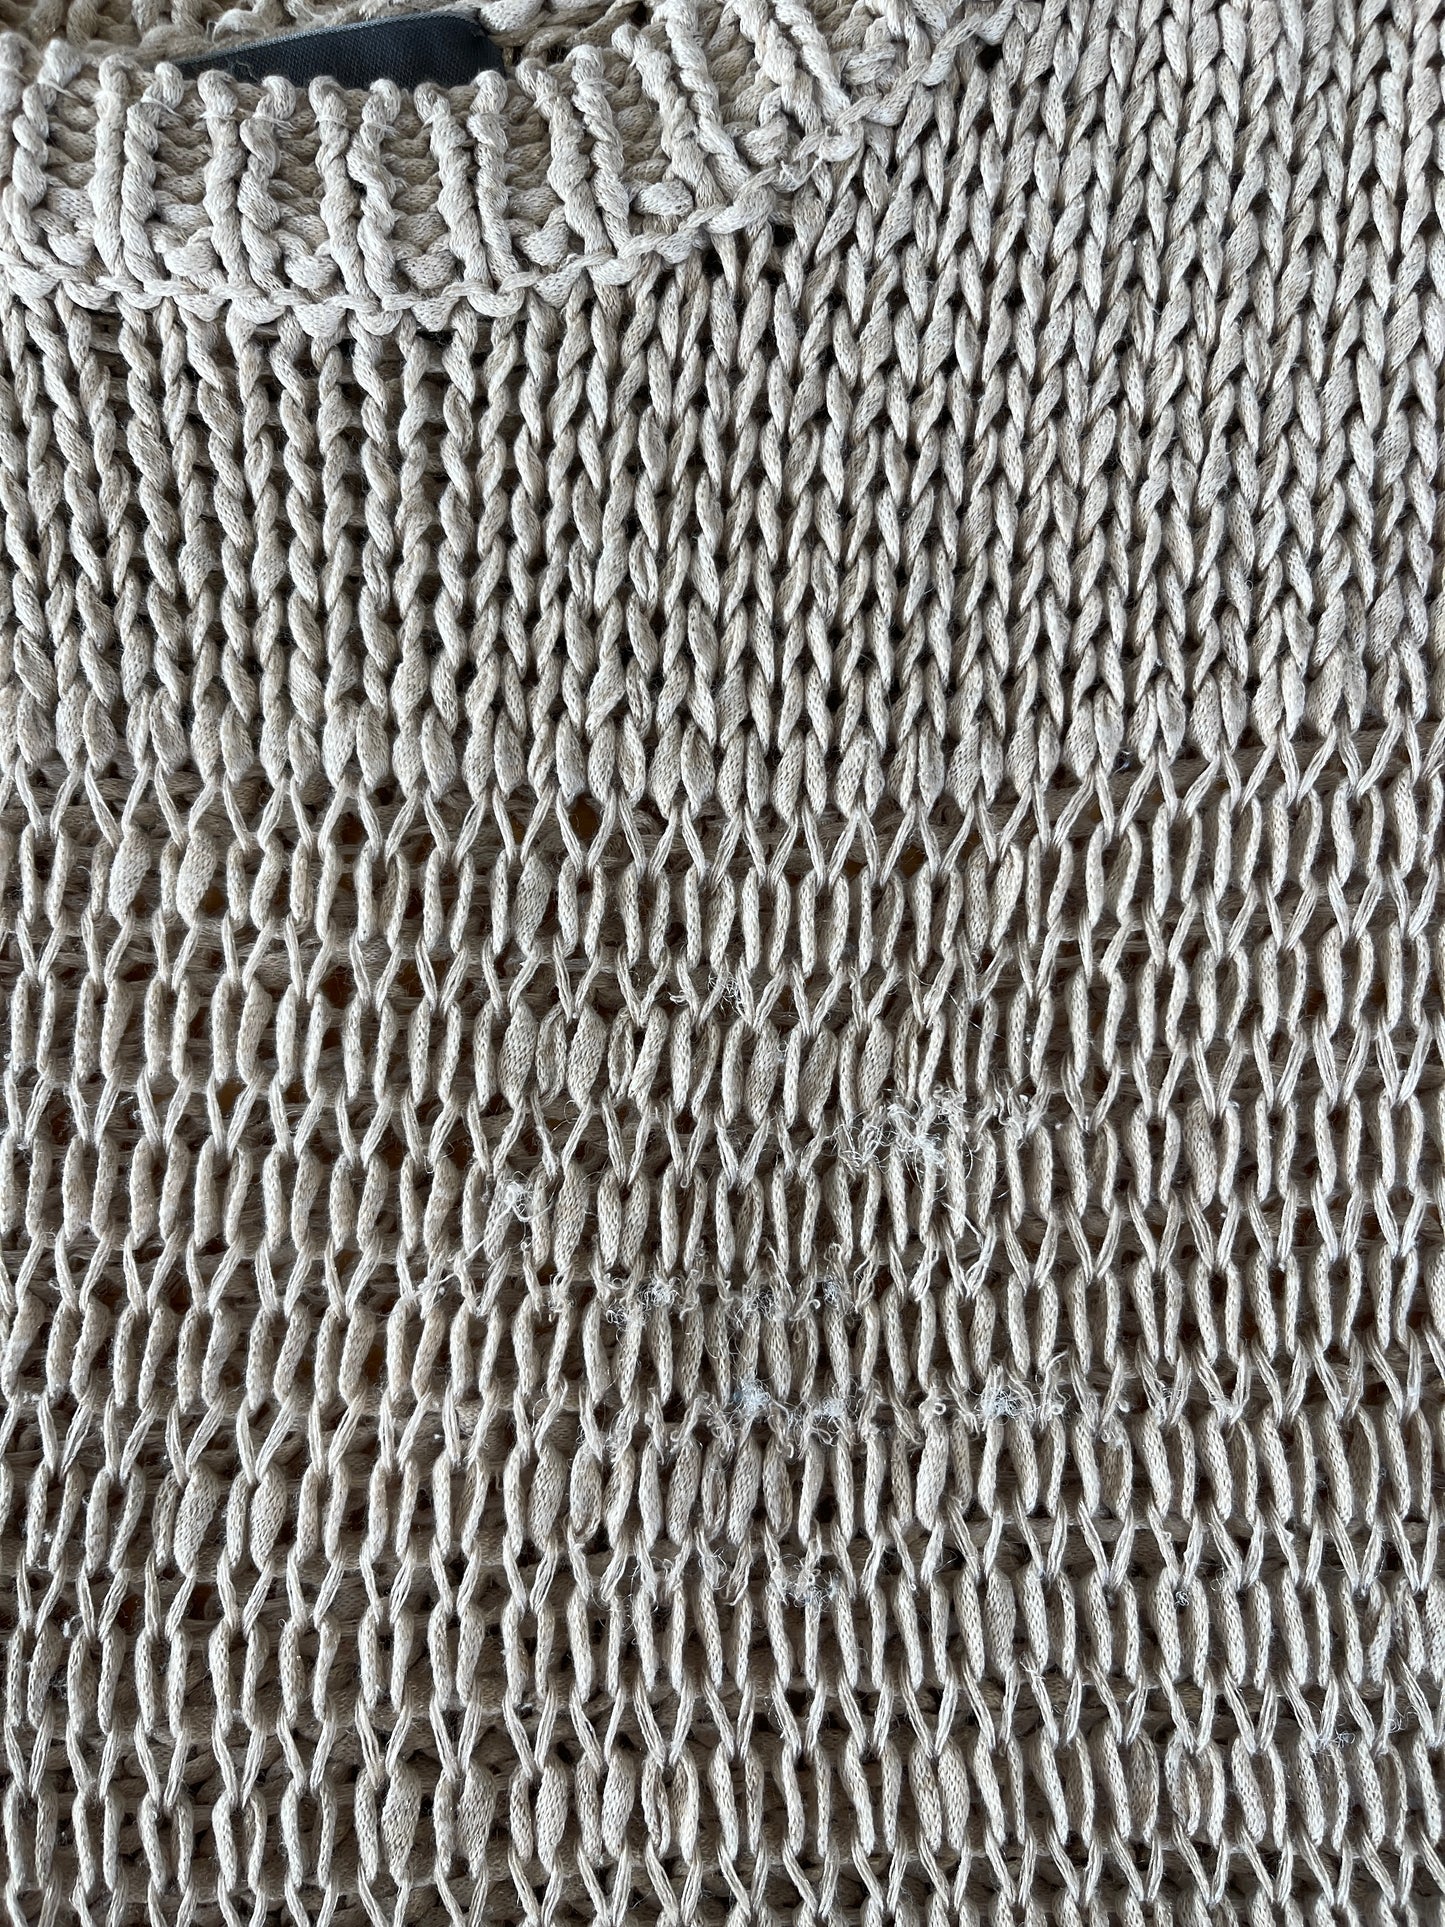 Chandail en tricot sable lavable IMPARFAIT* (M)